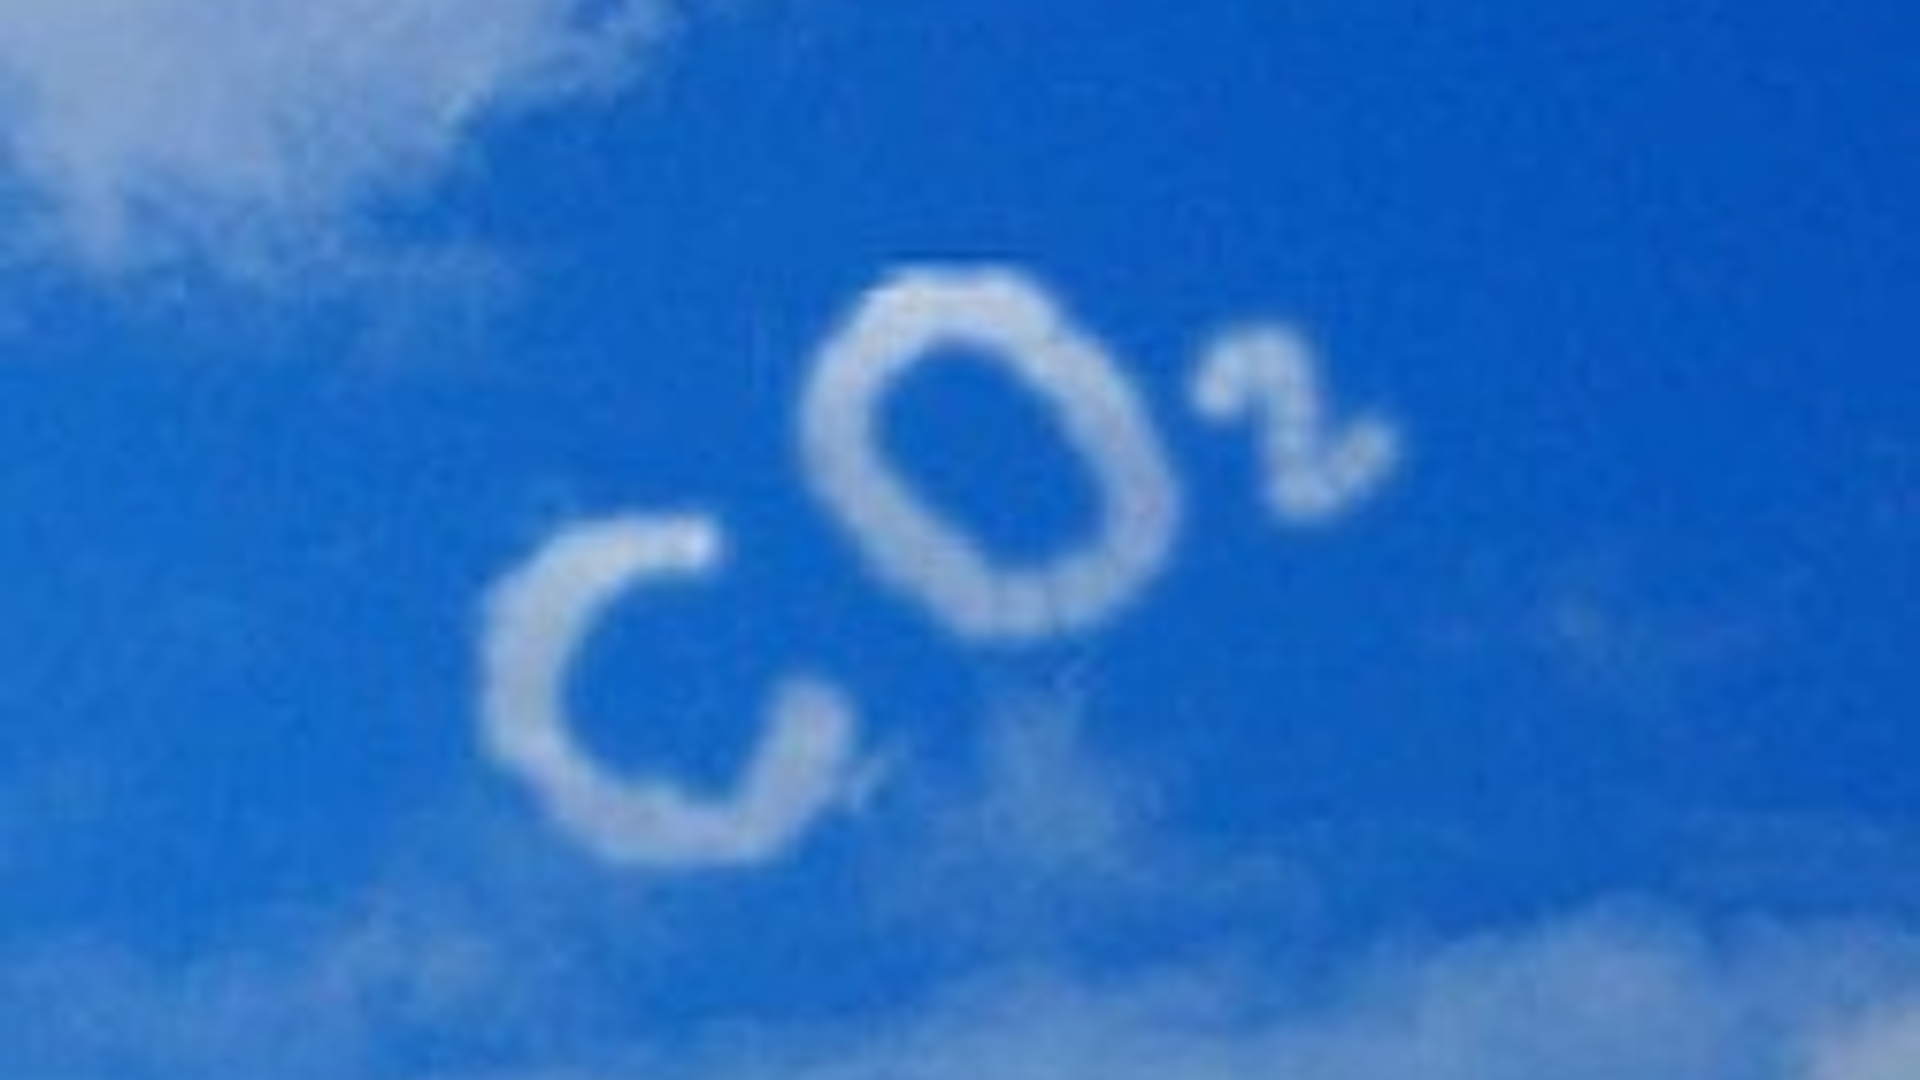 CO2_9faca9.jpg